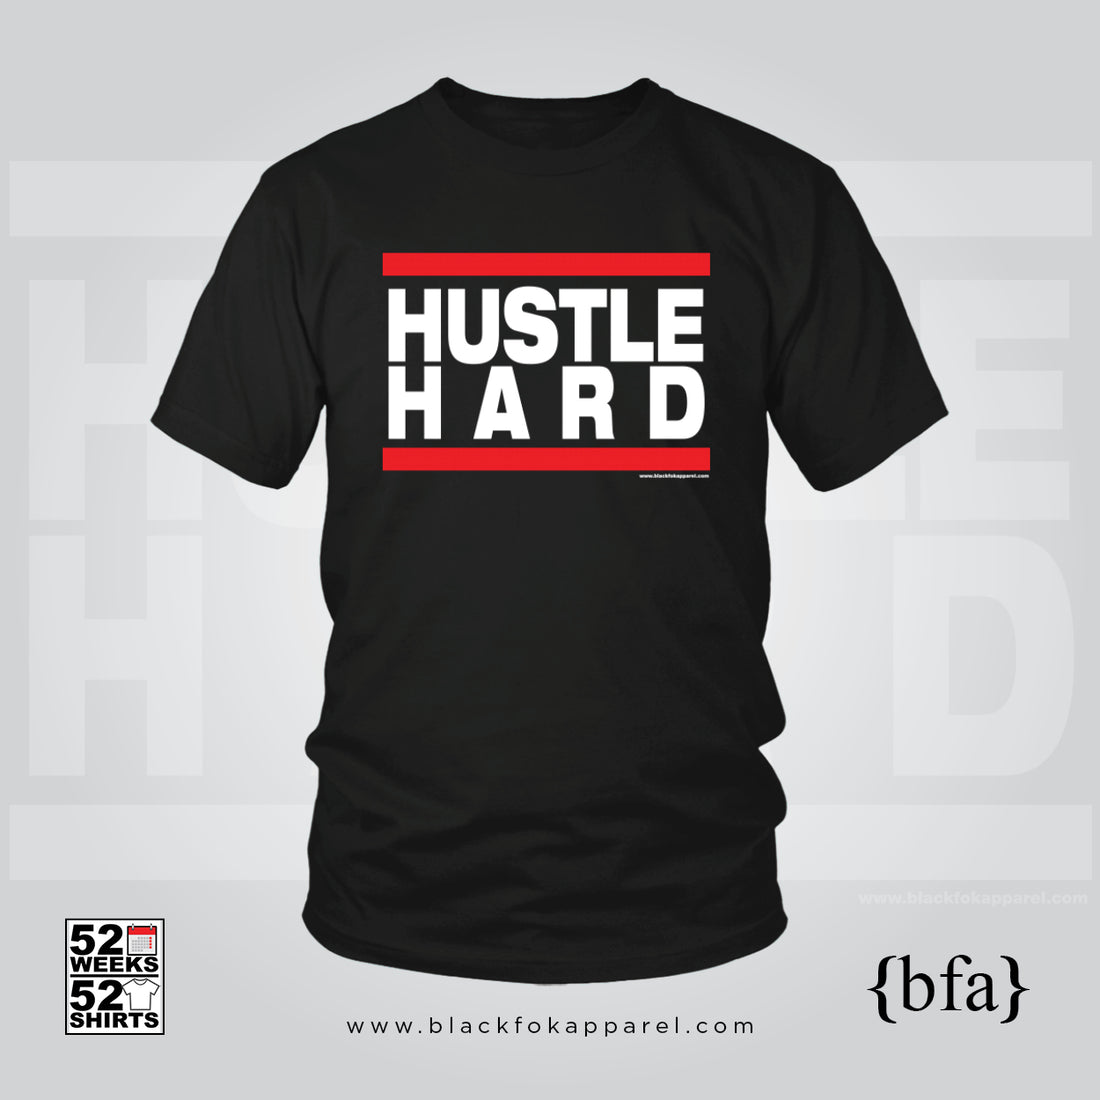 Week 15 - Hustle Hard - #52weeks52shirts